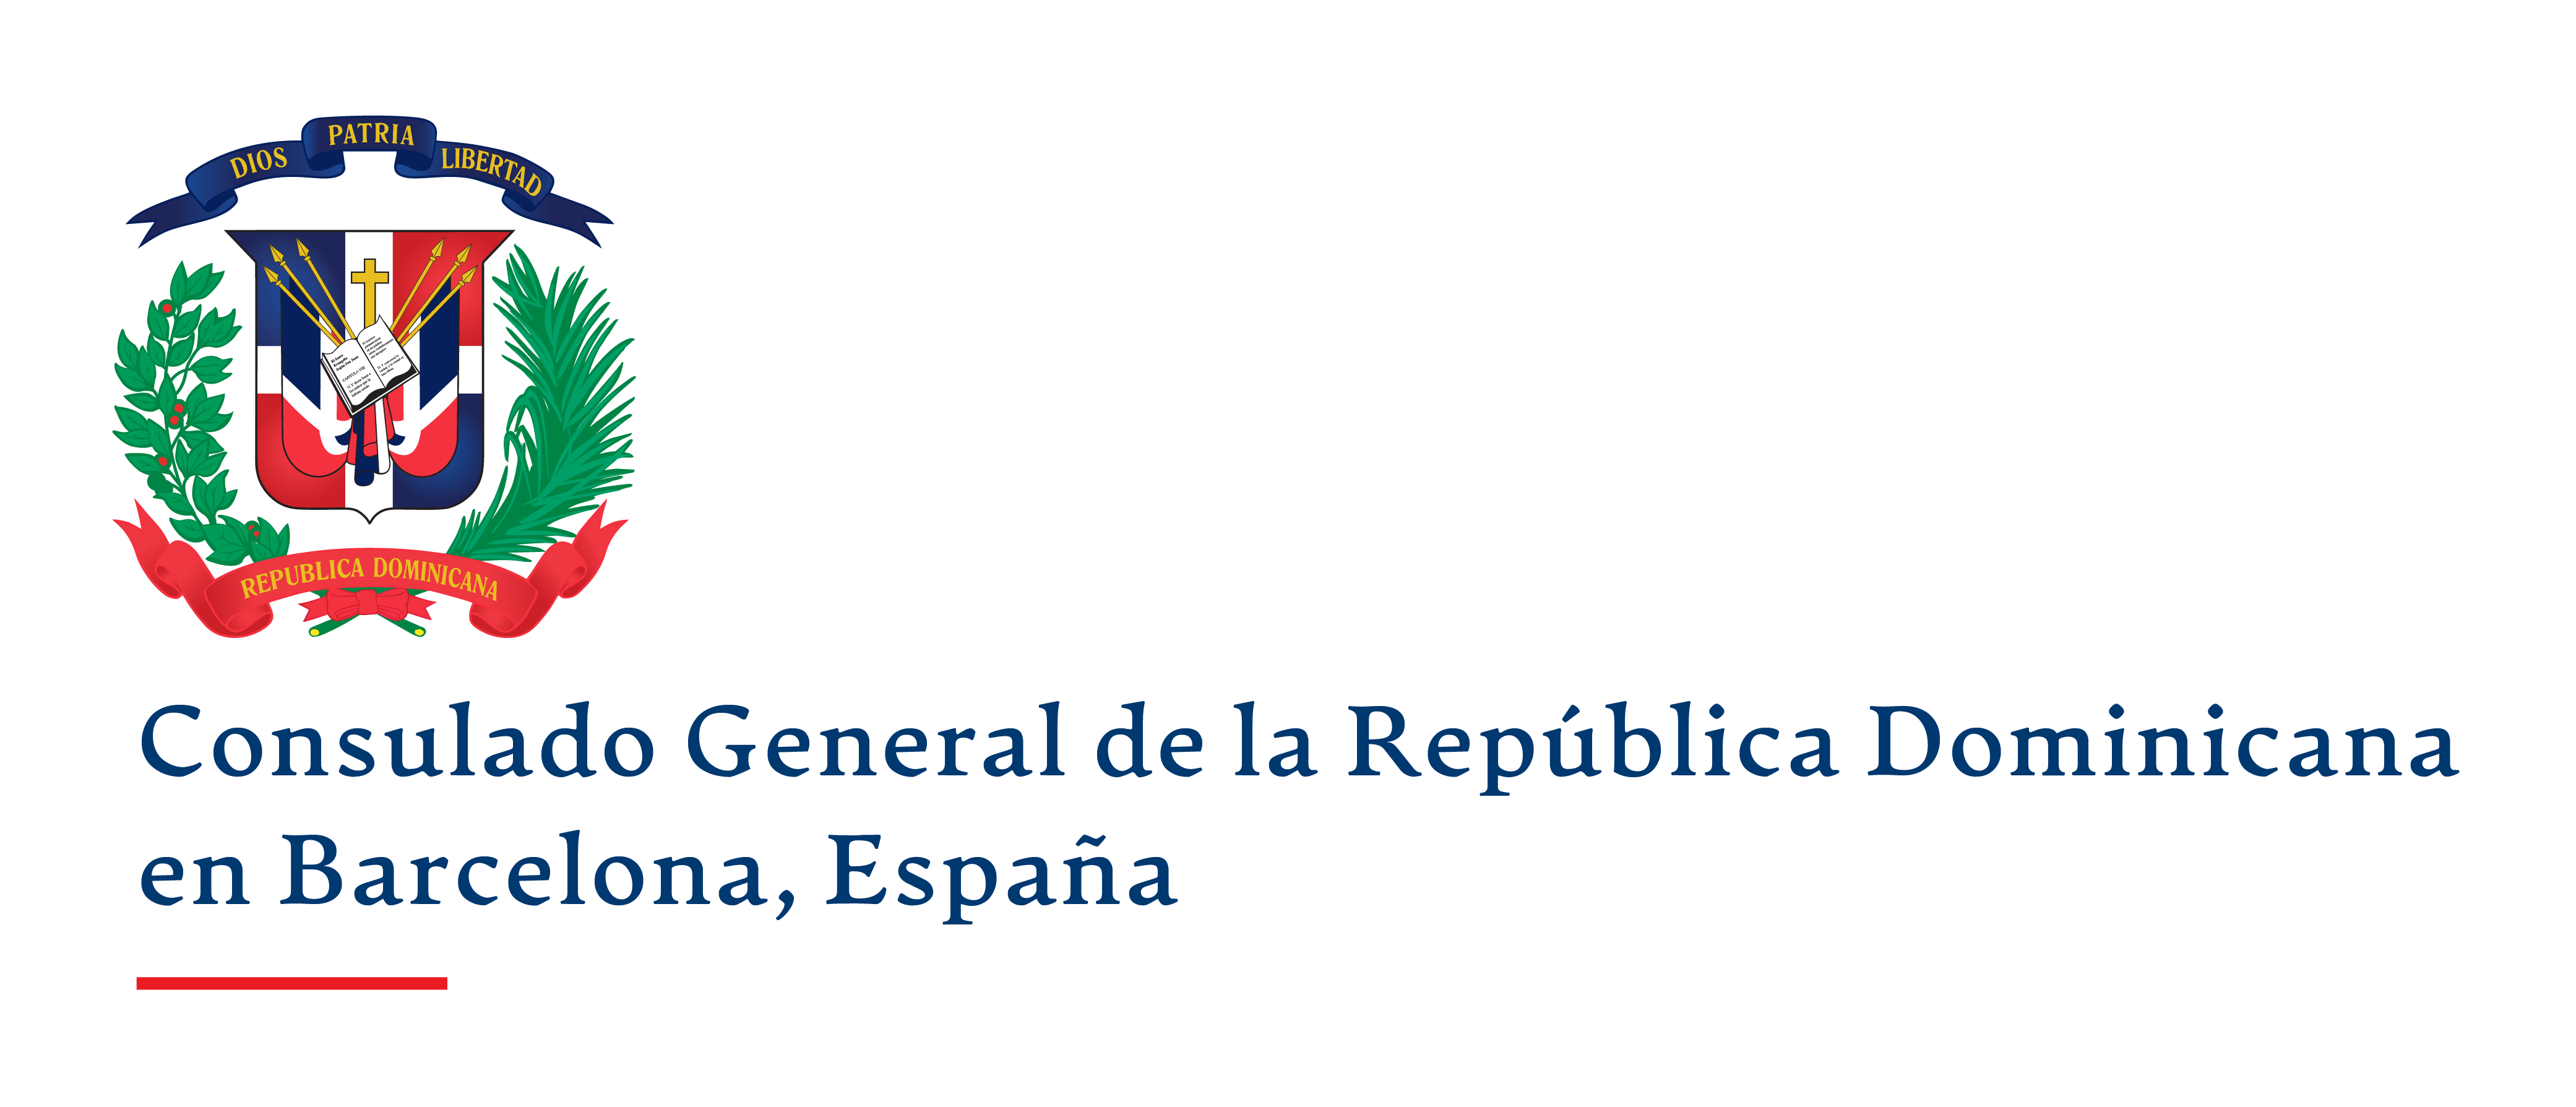 Consulado General de la República Dominicana en Barcelona, España